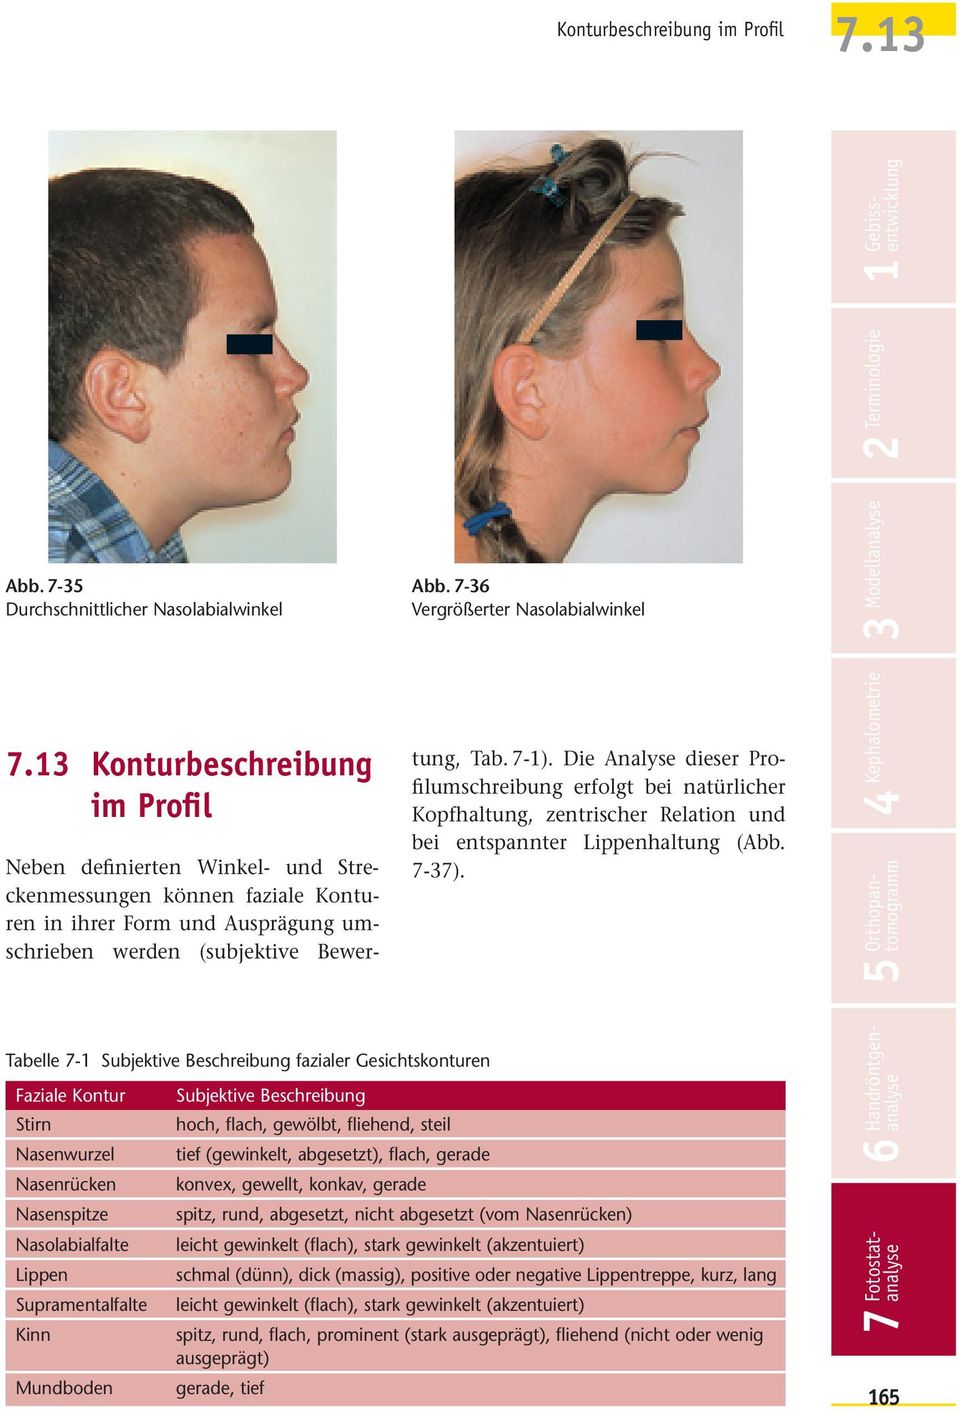 Die Analyse dieser Profilumschreibung erfolgt bei natürlicher Kopfhaltung, zentrischer Relation und bei entspannter Lippenhaltung (Abb. 7-37).